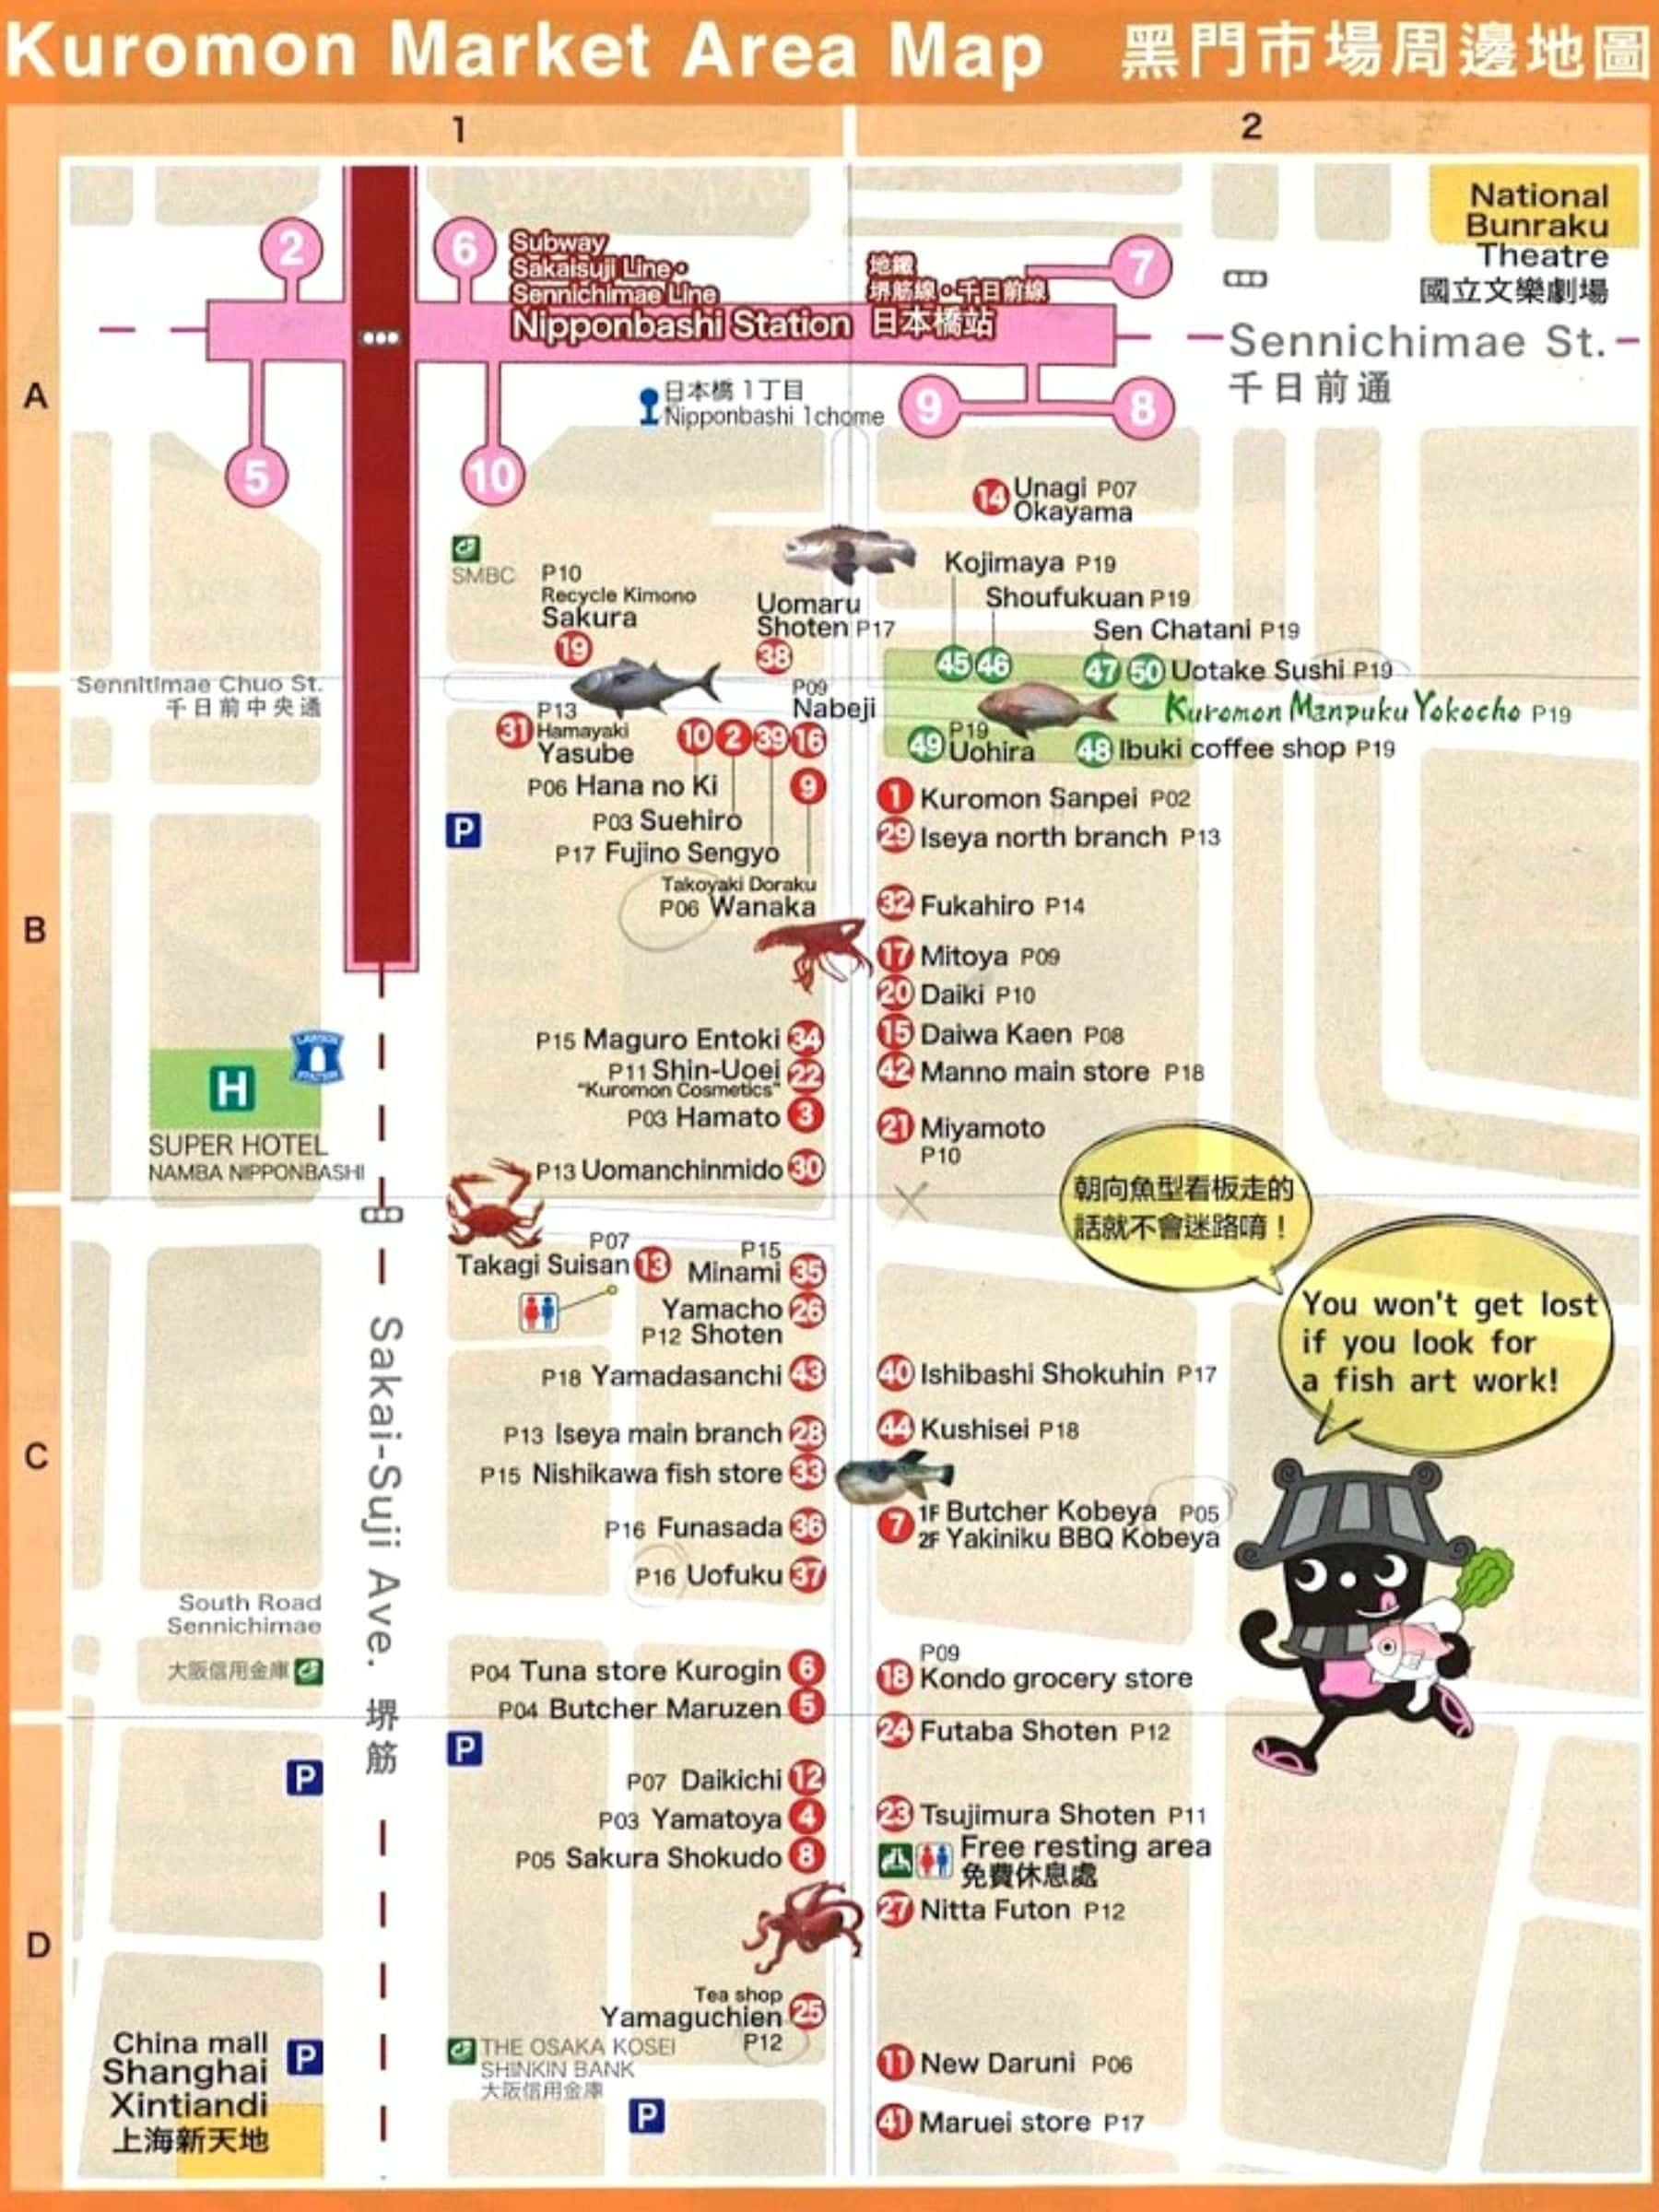 Map of Osaka Kuromon Market